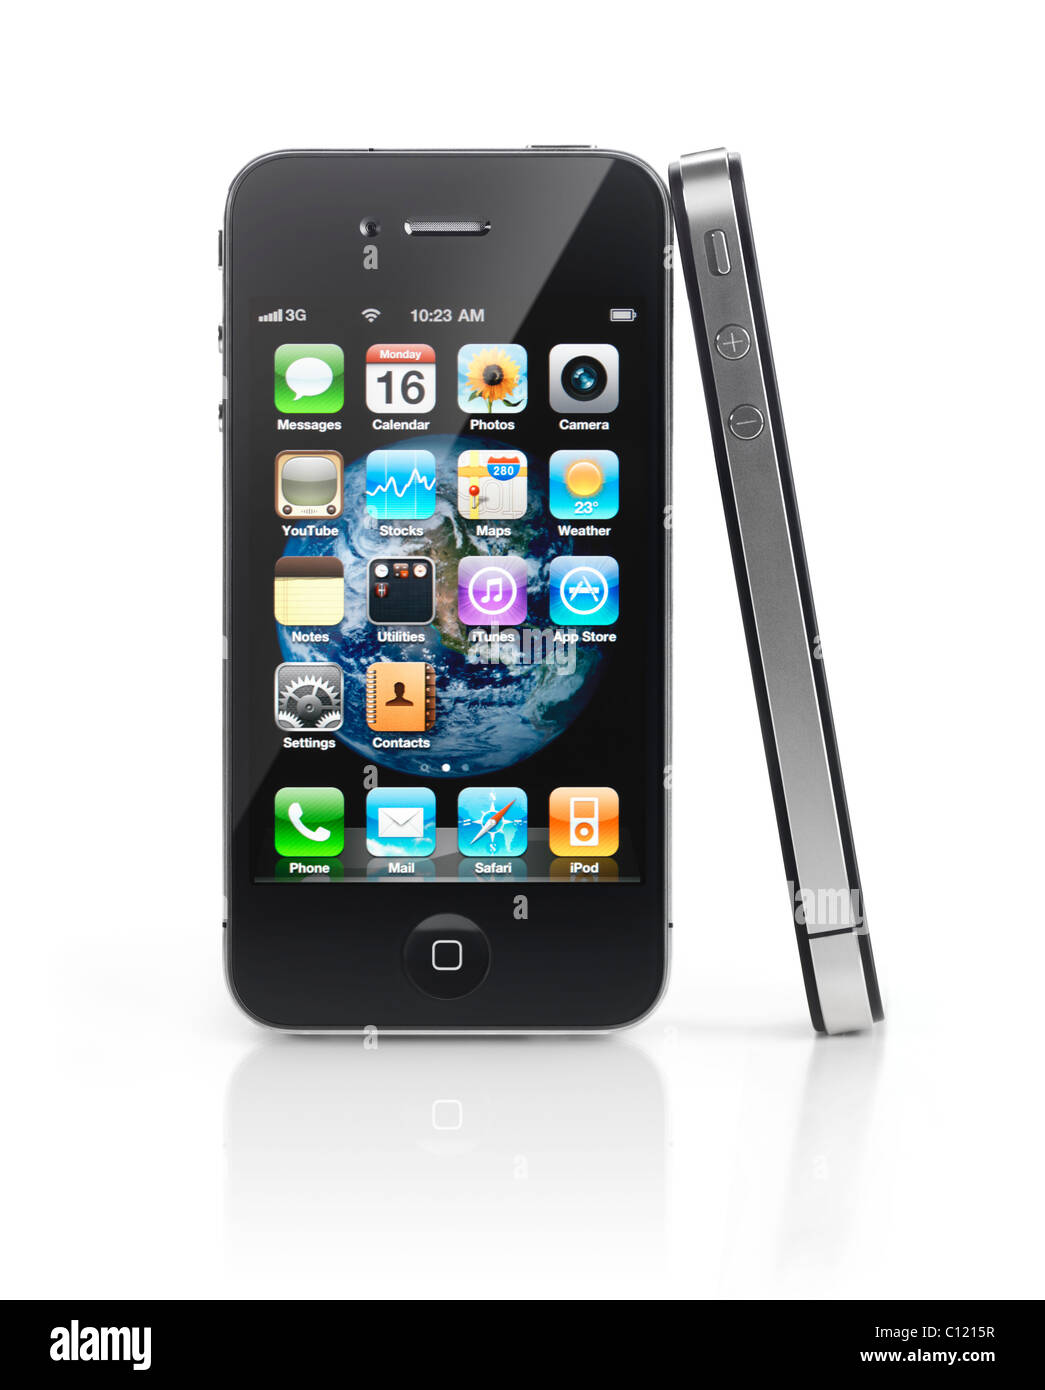 Điện thoại iPhone: Sở hữu một chiếc điện thoại iPhone là mơ ước của rất nhiều người. Với thiết kế tinh tế và đầy đủ công nghệ hàng đầu thế giới, chiếc điện thoại này sẽ làm bạn hài lòng. Hãy xem hình ảnh liên quan để hiểu thêm về những tính năng đặc biệt của iPhone. 